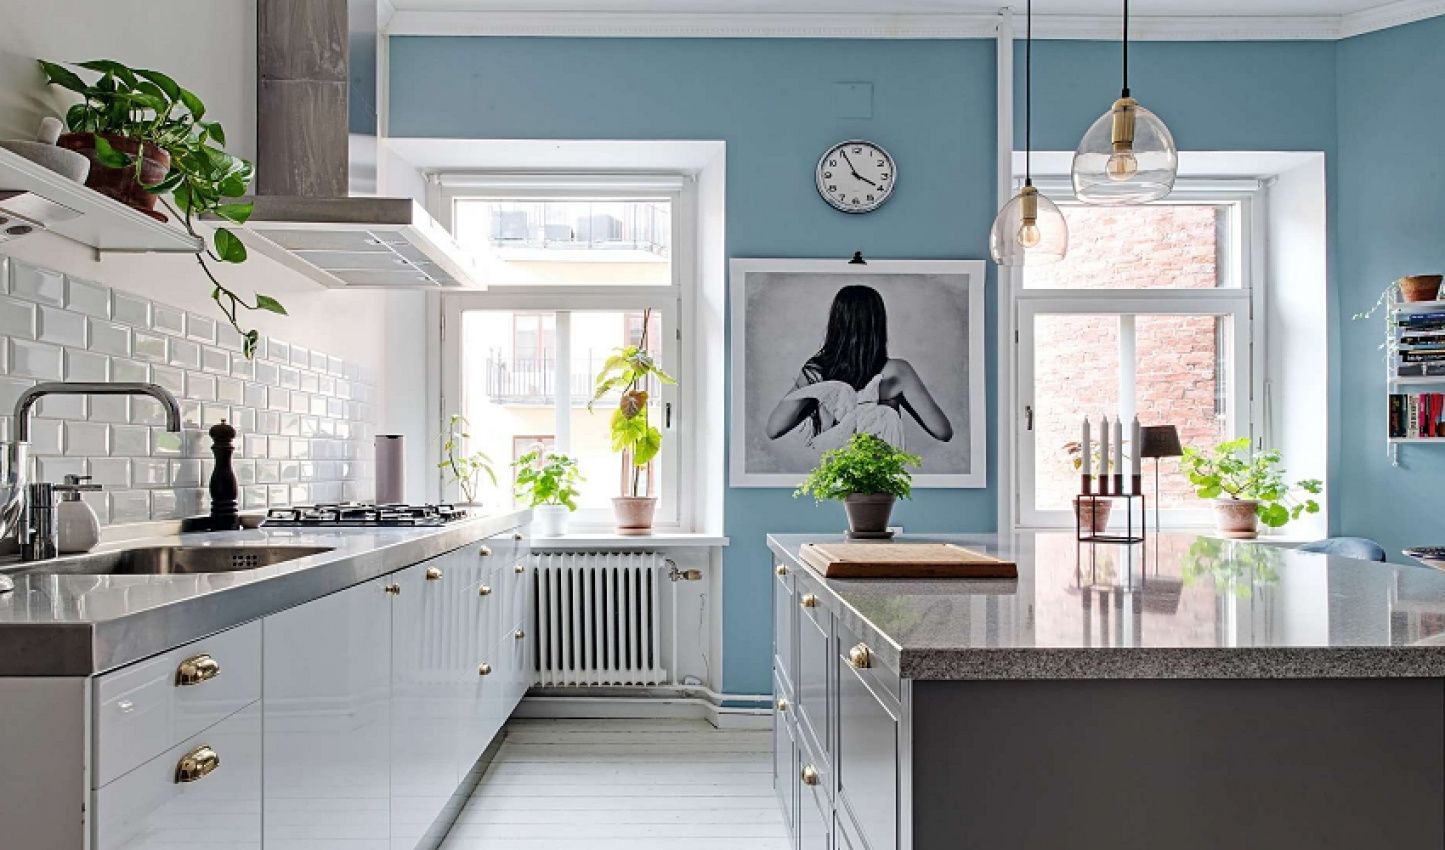 Ngắm căn hộ phong cách Scandinavian thanh lịch và xanh mát